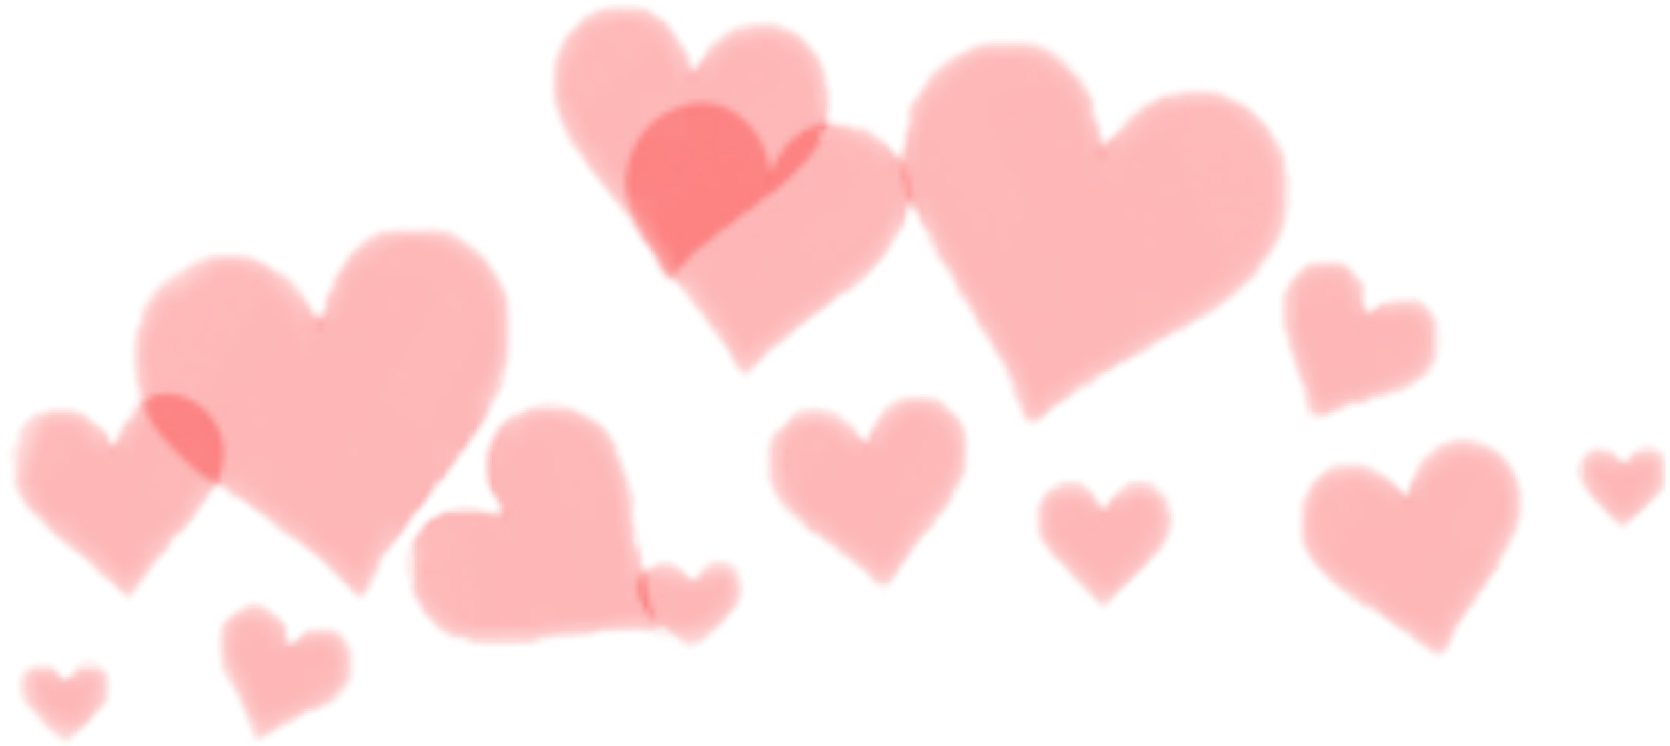 heart crown heartcrown freetoedit sticker by @savvurio